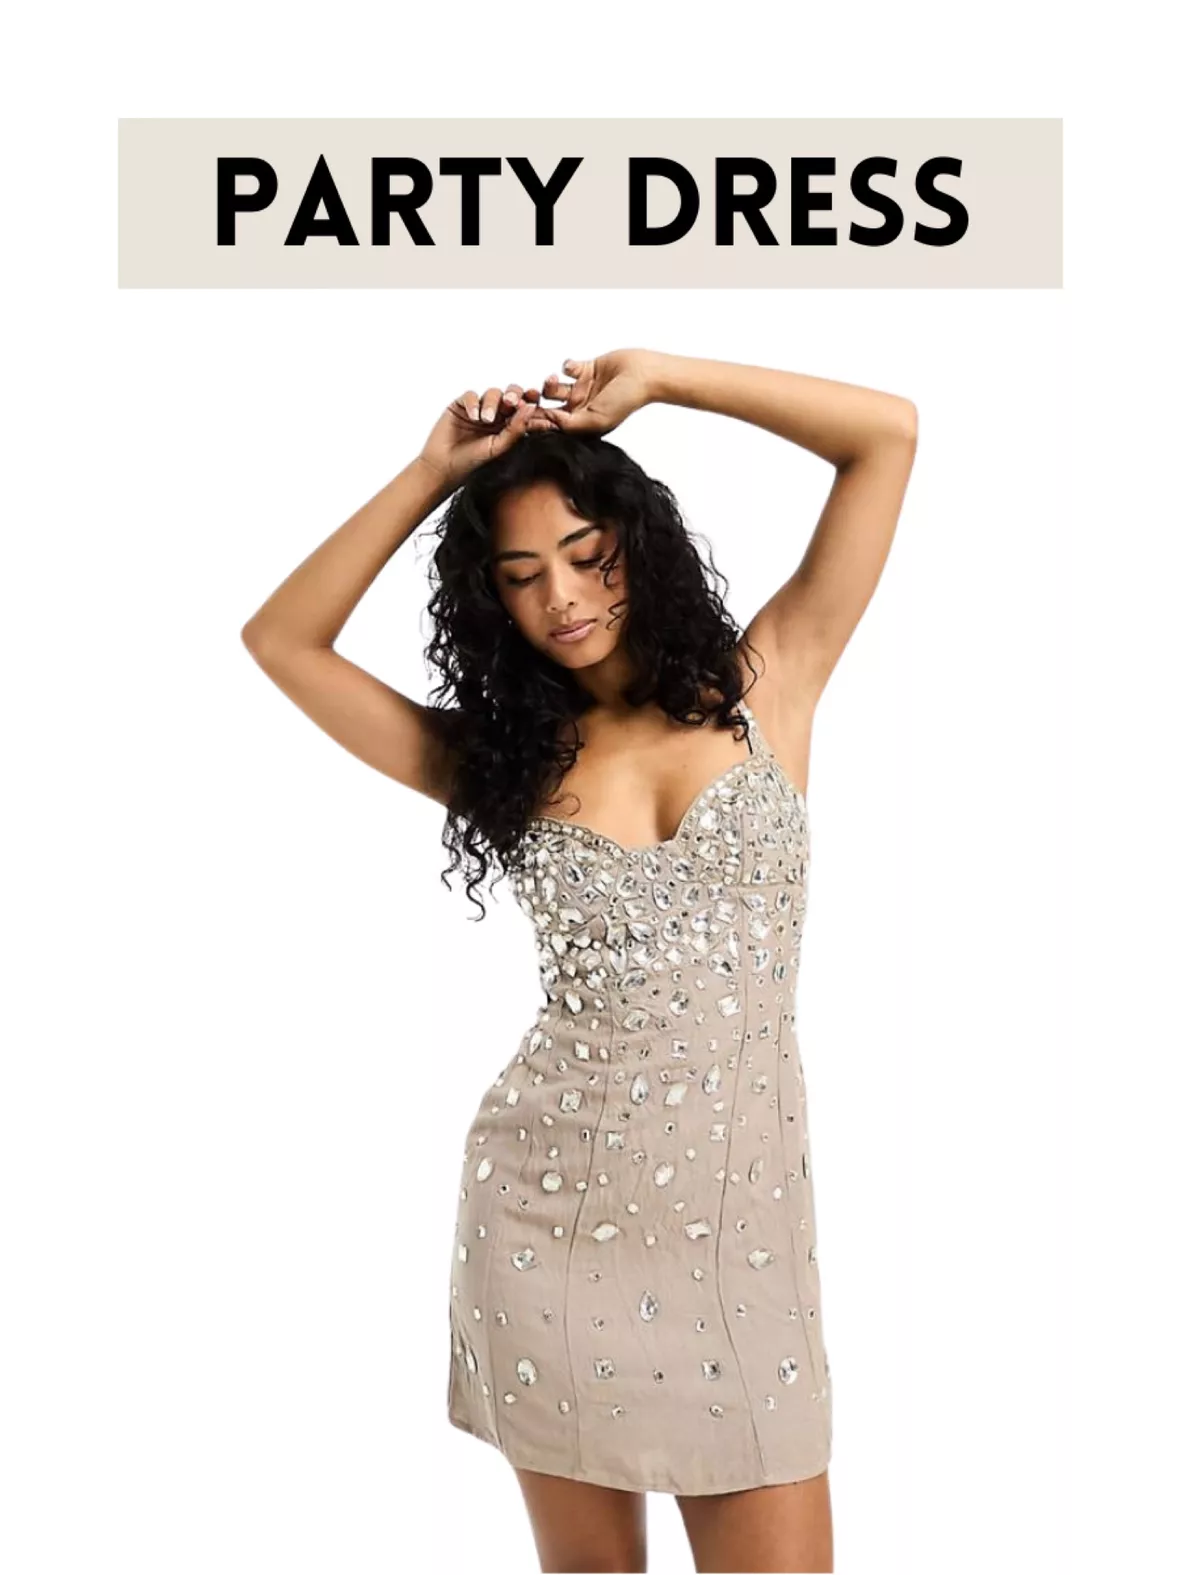 ASOS DESIGN embellished mini dress … curated on LTK